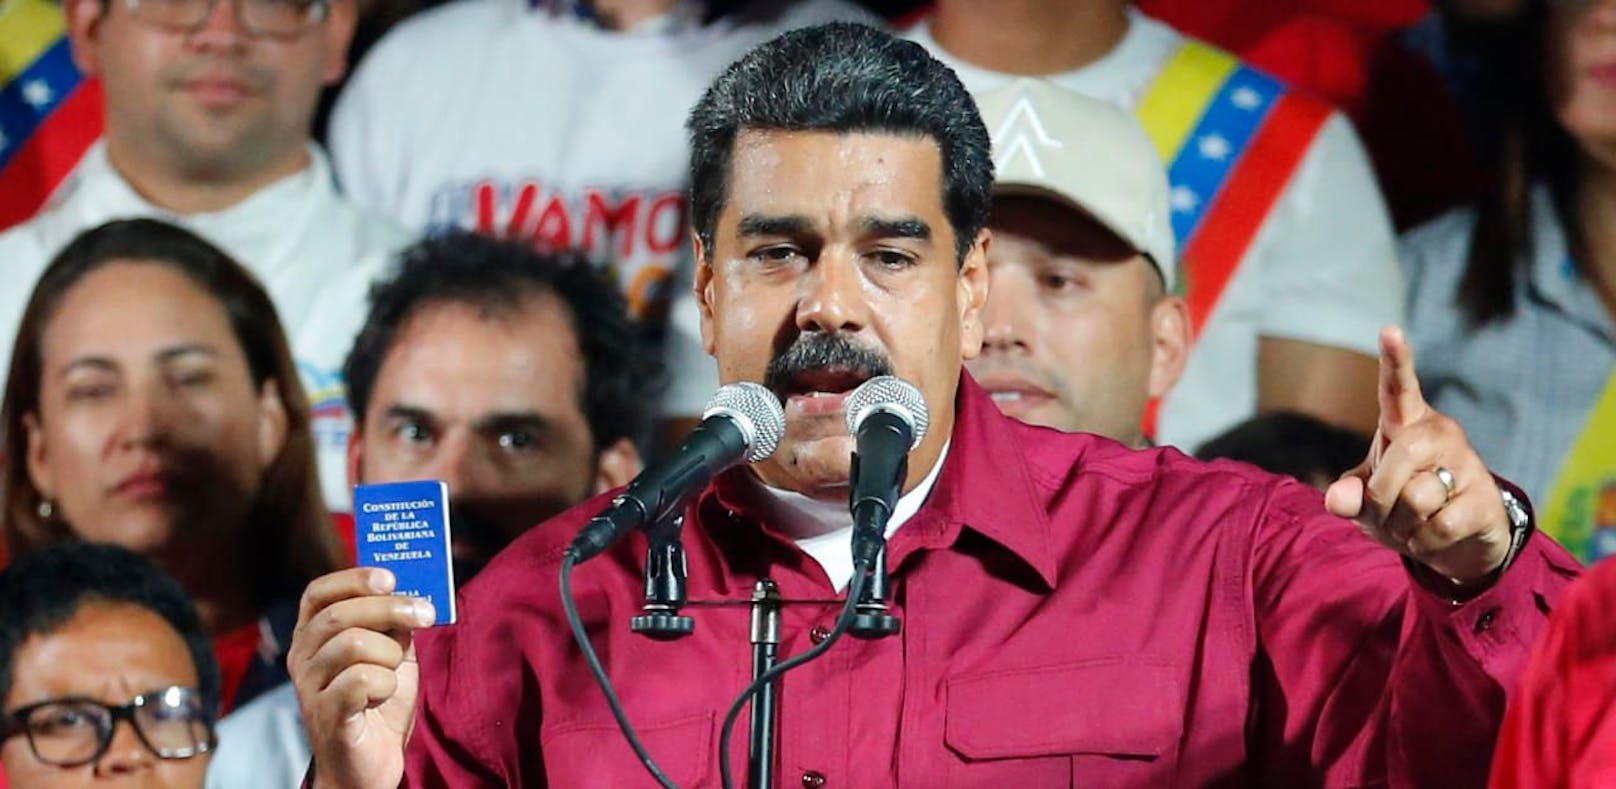 Nicolás Maduro wird zum Sieger erklärt